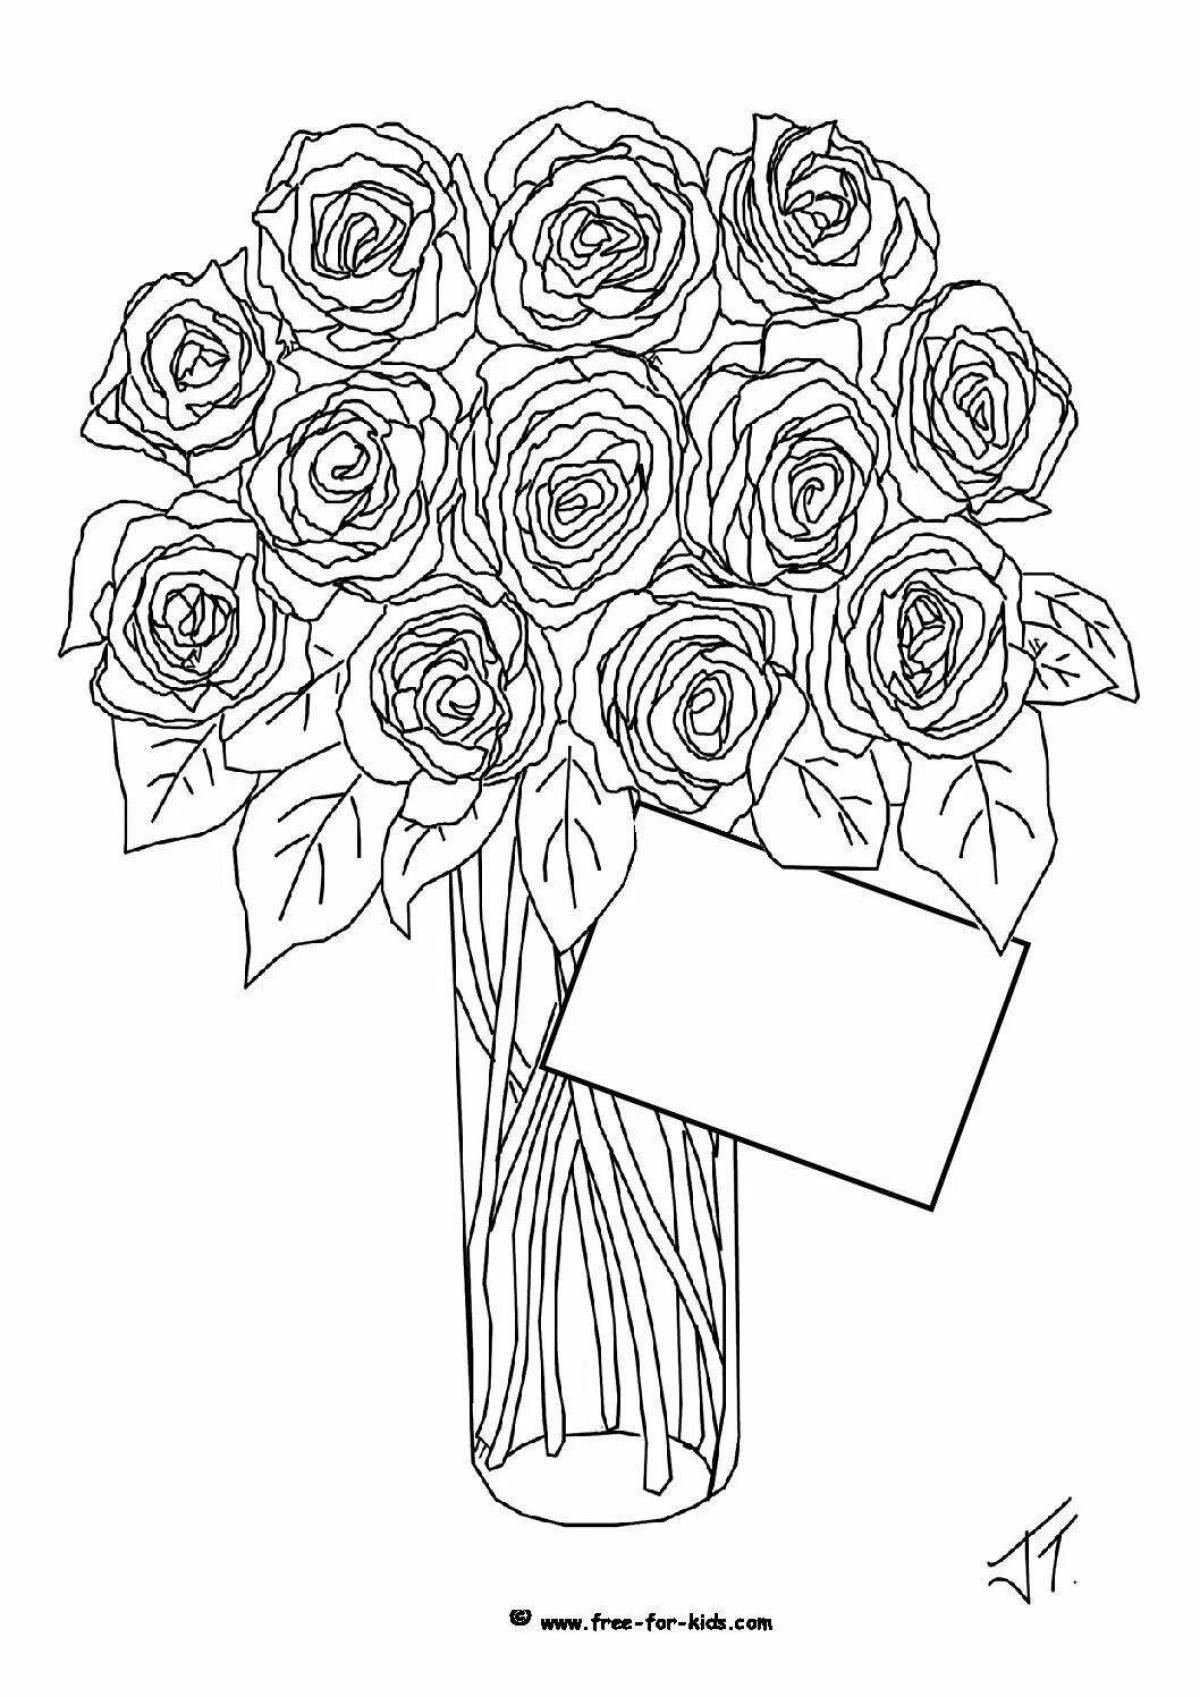 Необычная раскраска розы в вазе